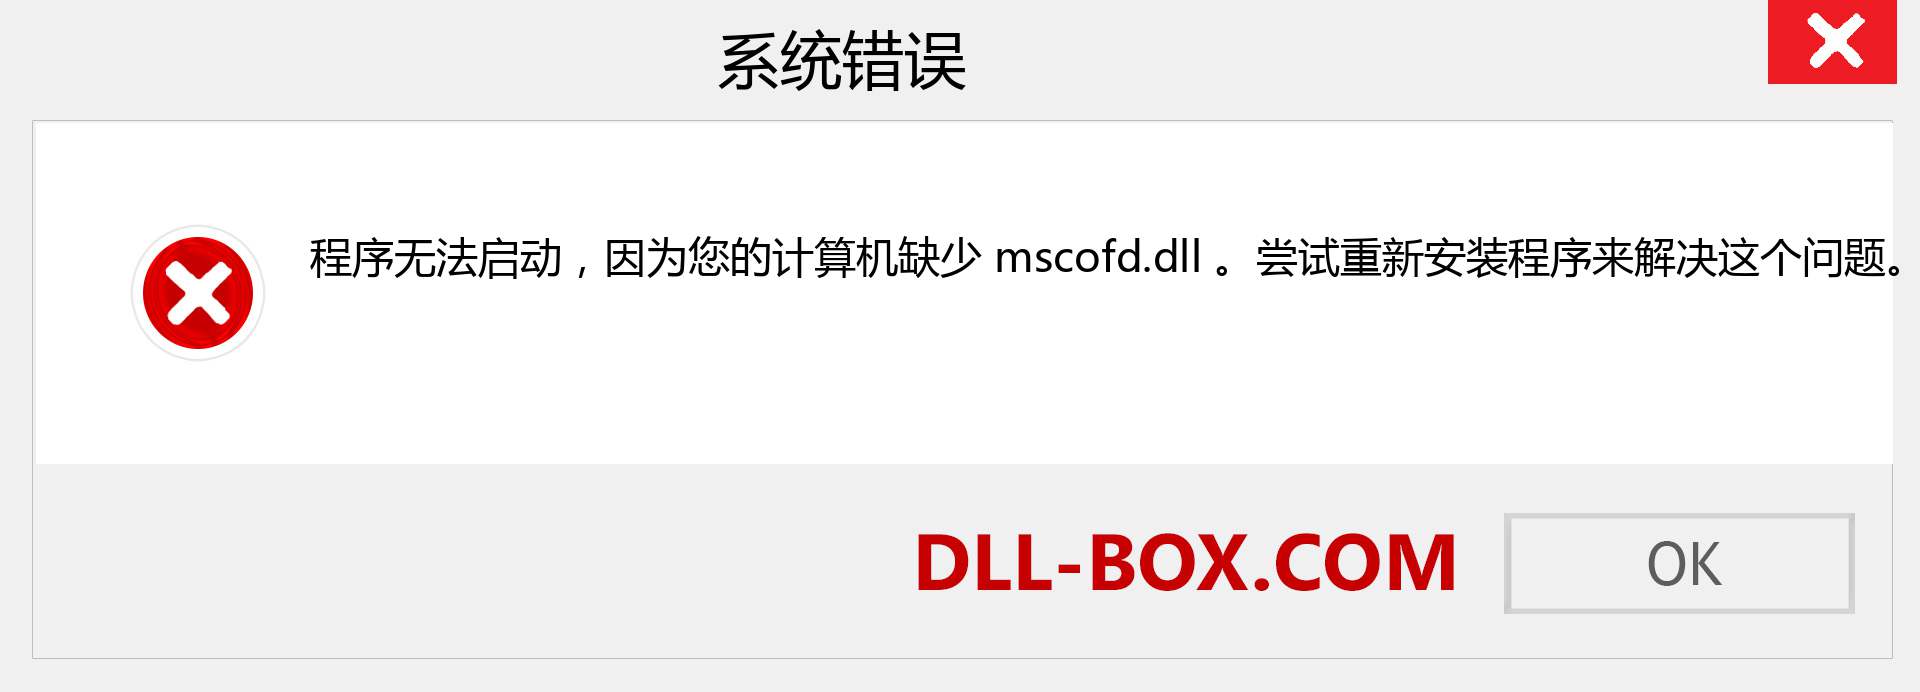 mscofd.dll 文件丢失？。 适用于 Windows 7、8、10 的下载 - 修复 Windows、照片、图像上的 mscofd dll 丢失错误